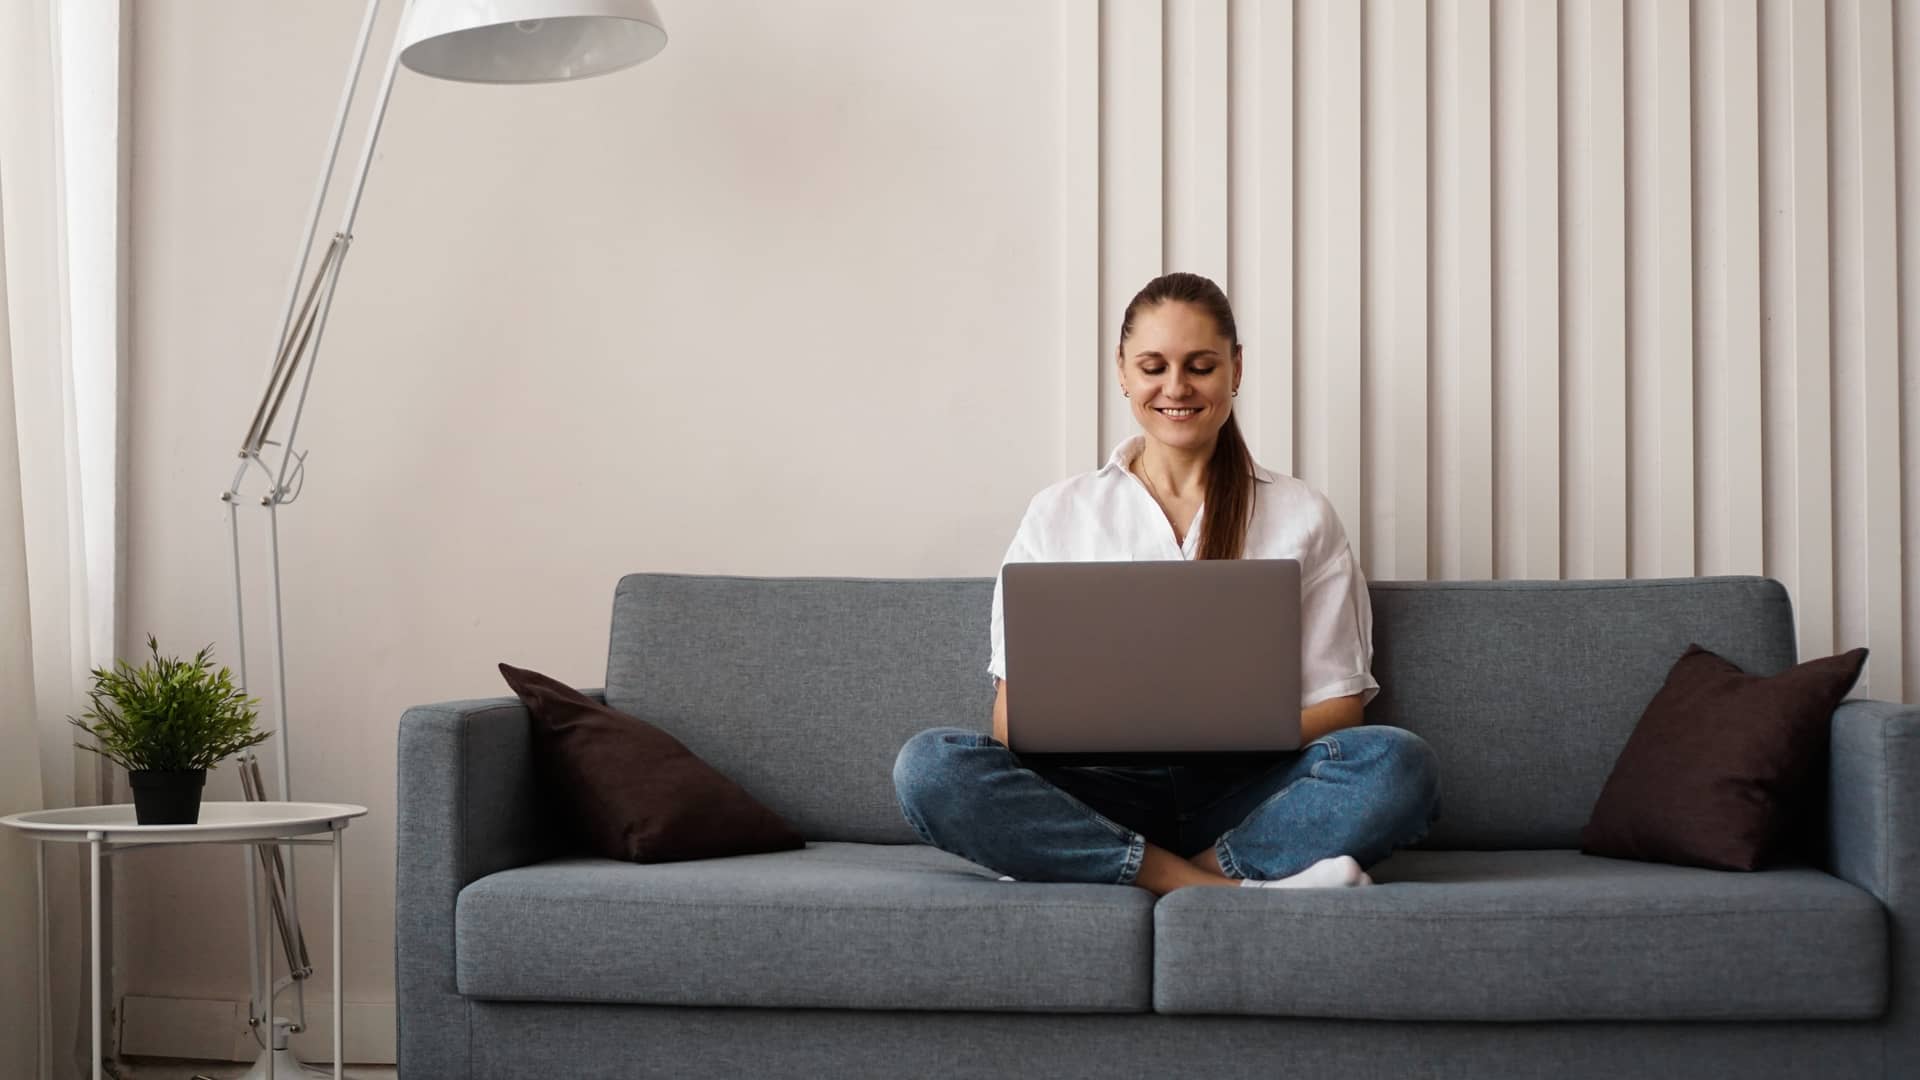 muejr disfrutando de su tarifa de internet mientras trabaja con su ordenador en el sofa de casa